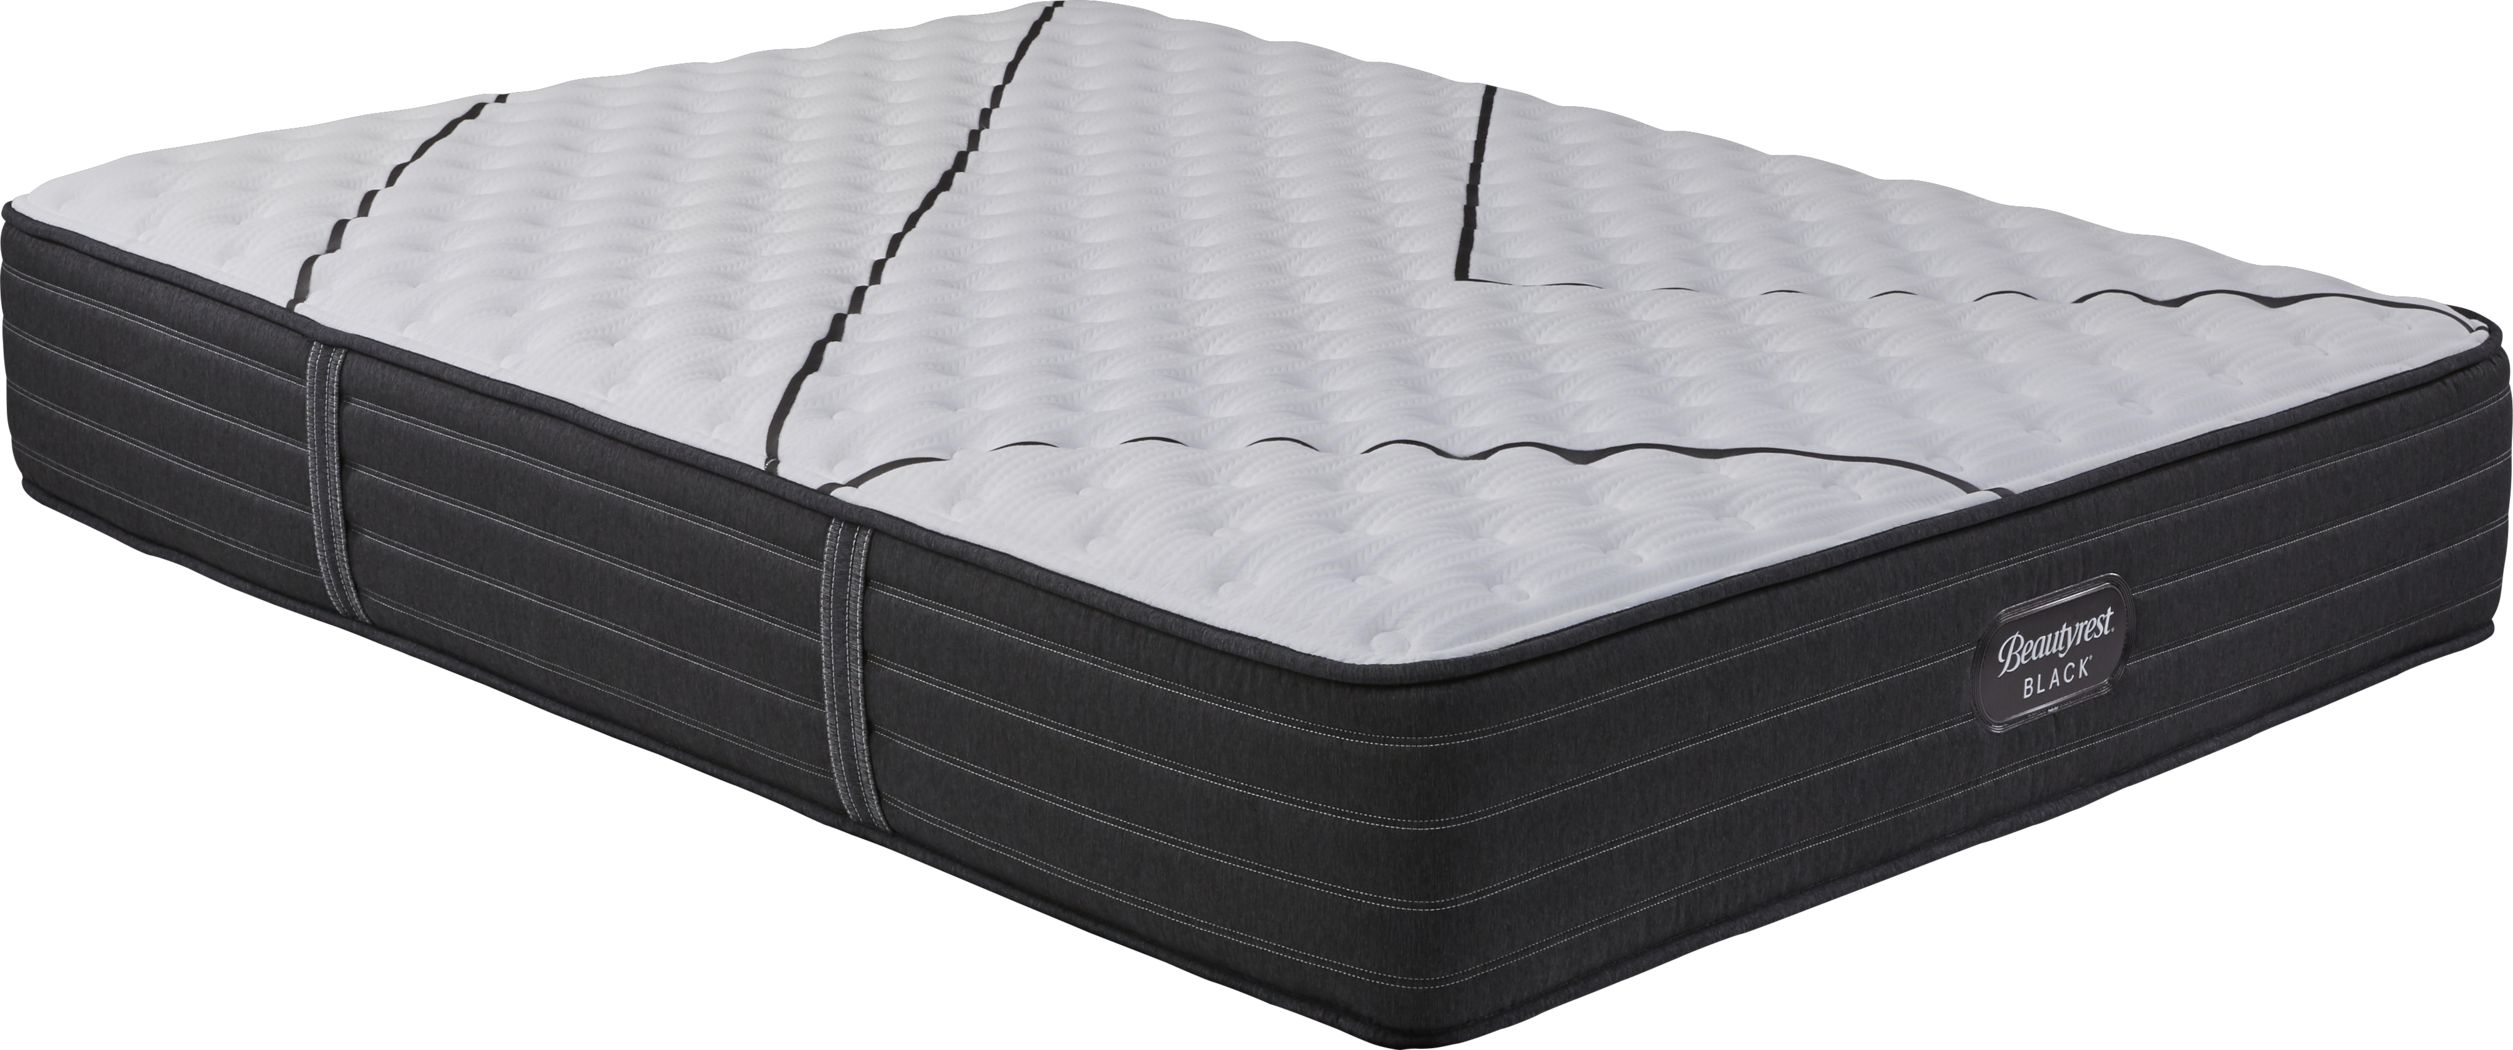 lucid firm queen mattress